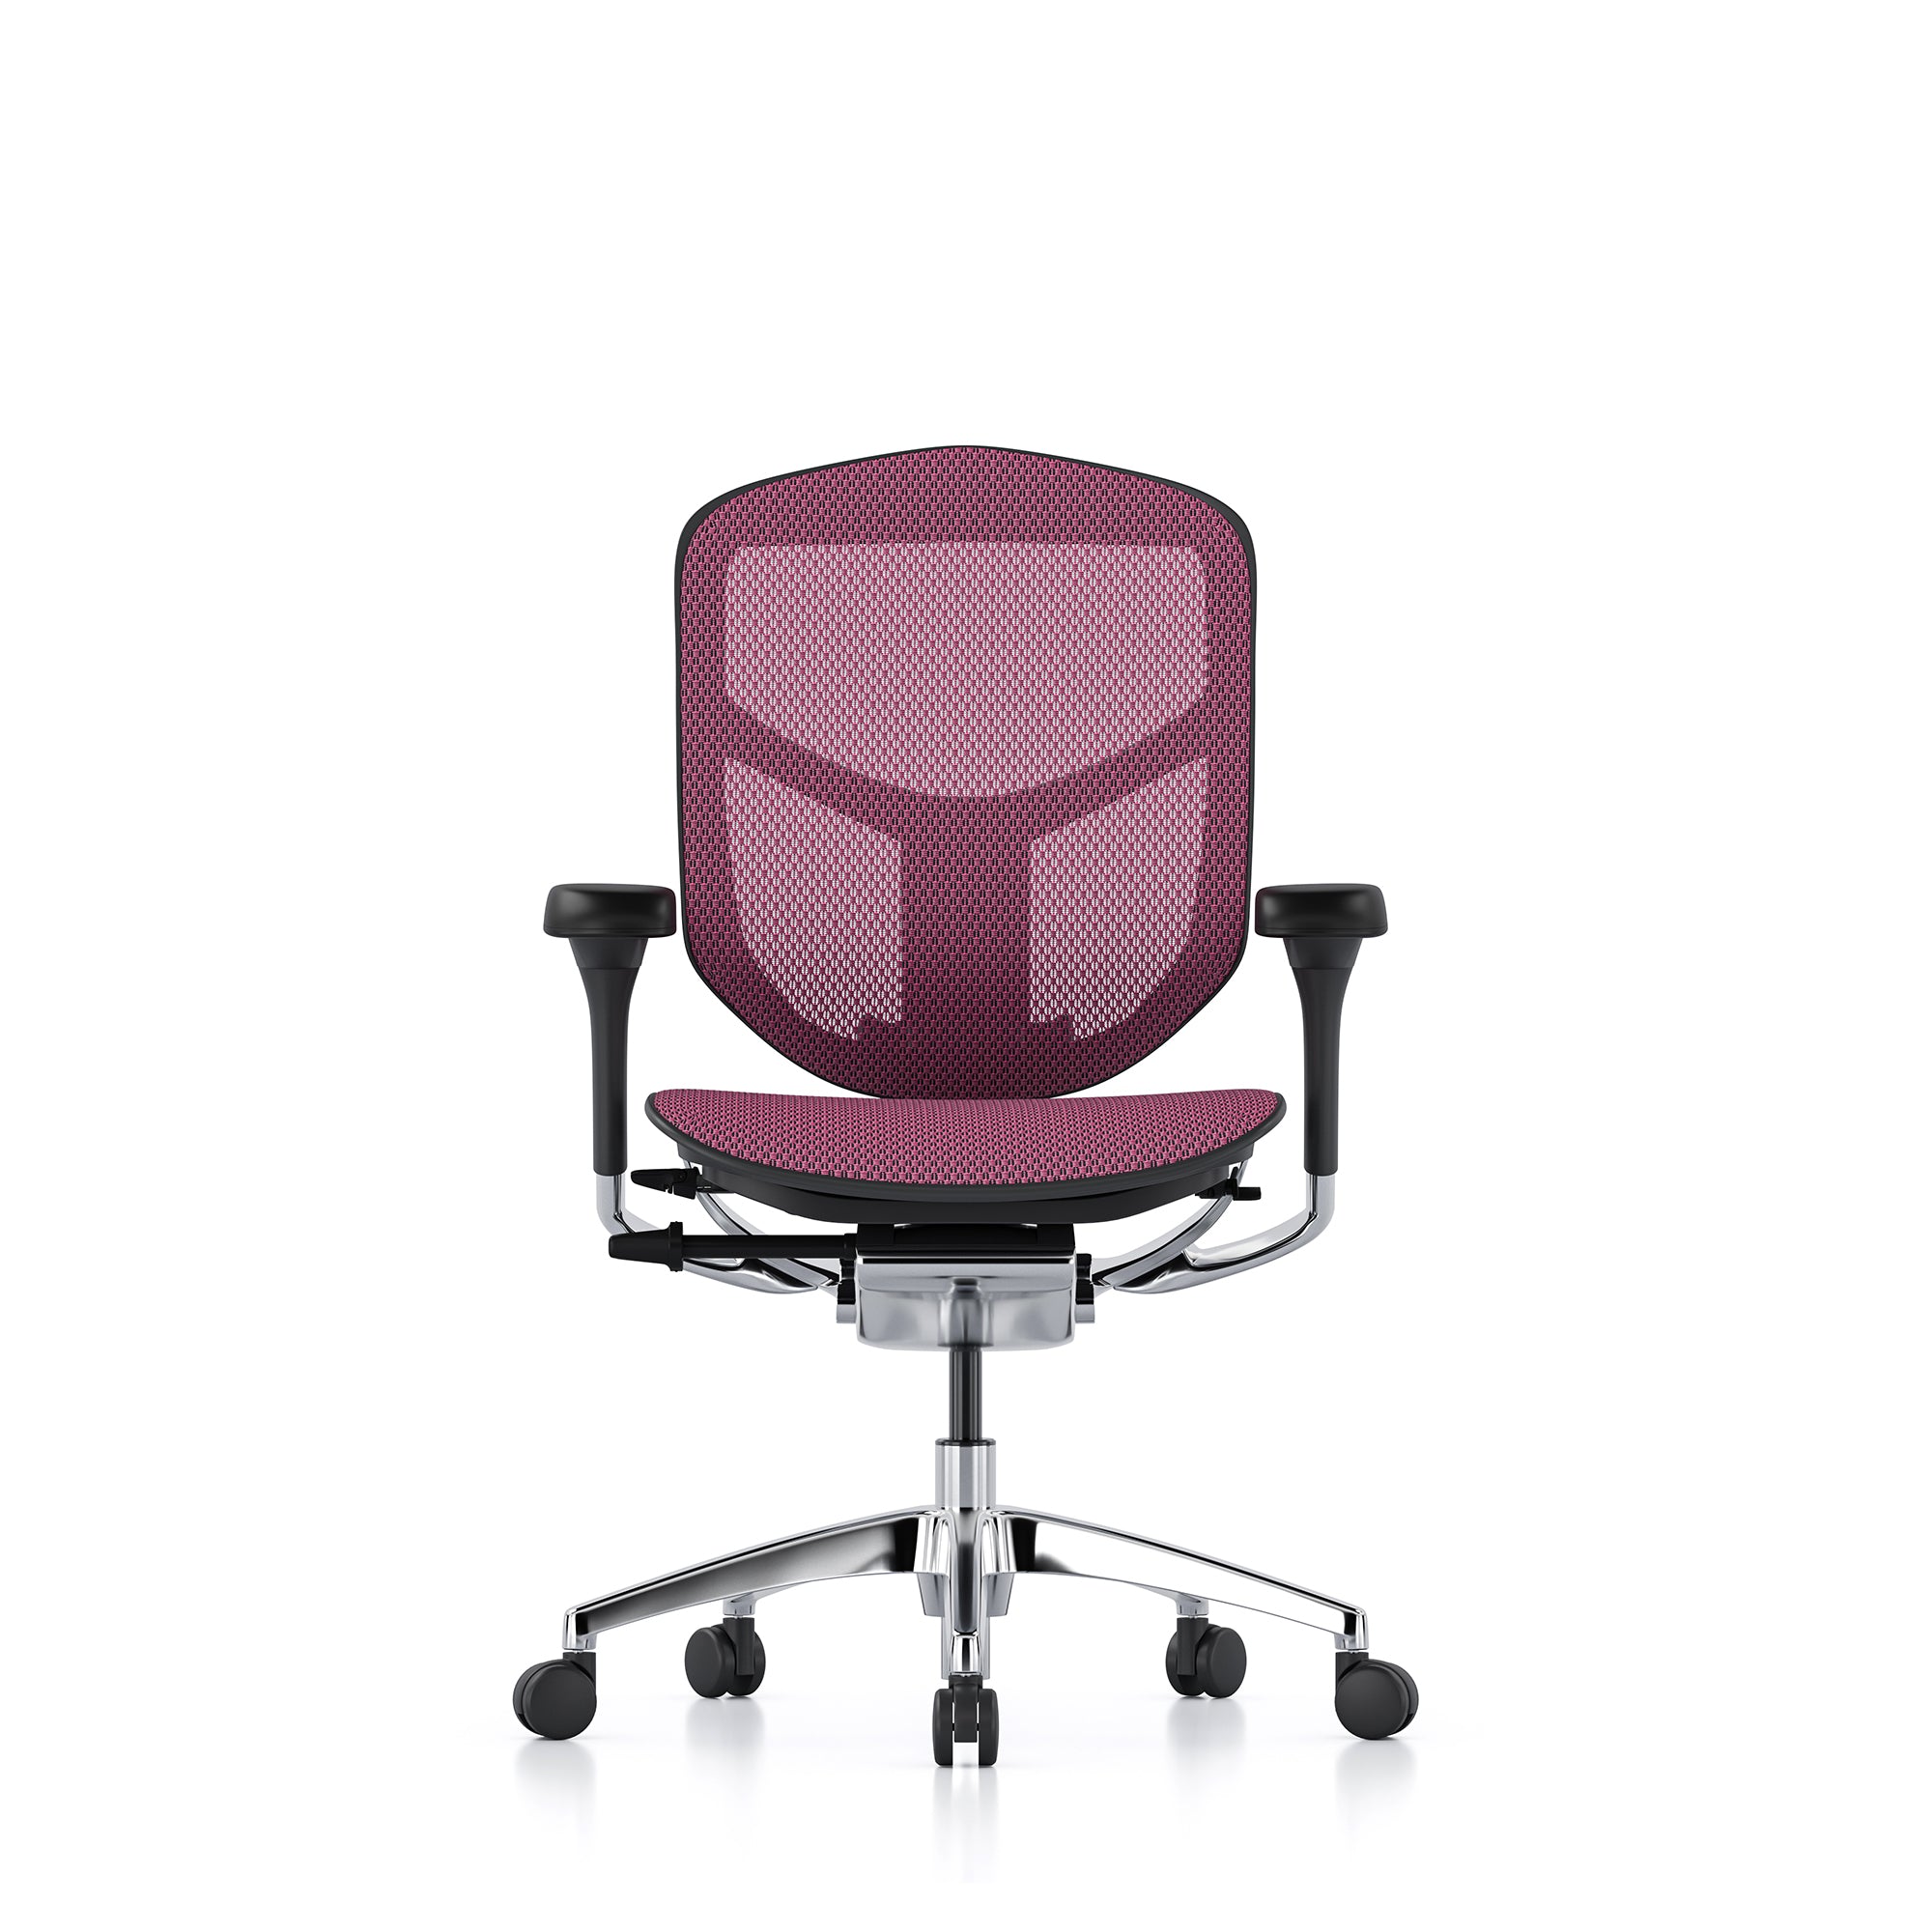 Ergohuman chairs | Full range of ergonomic office and gaming chairs